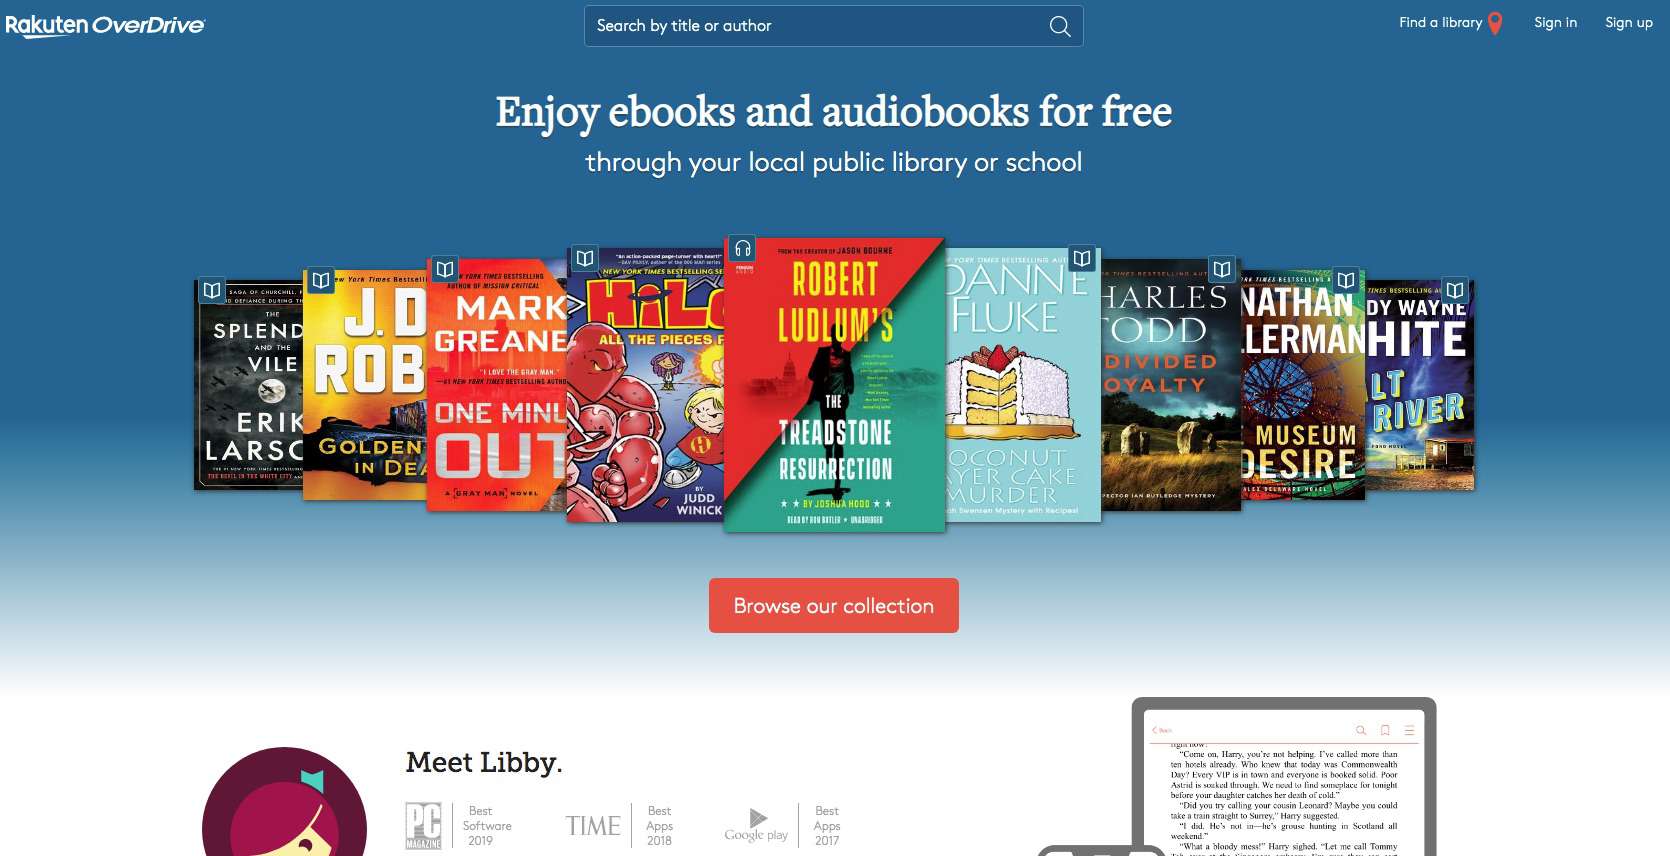 Captura de tela do serviço OneDrive para obter livros gratuitos do Nook da biblioteca pública